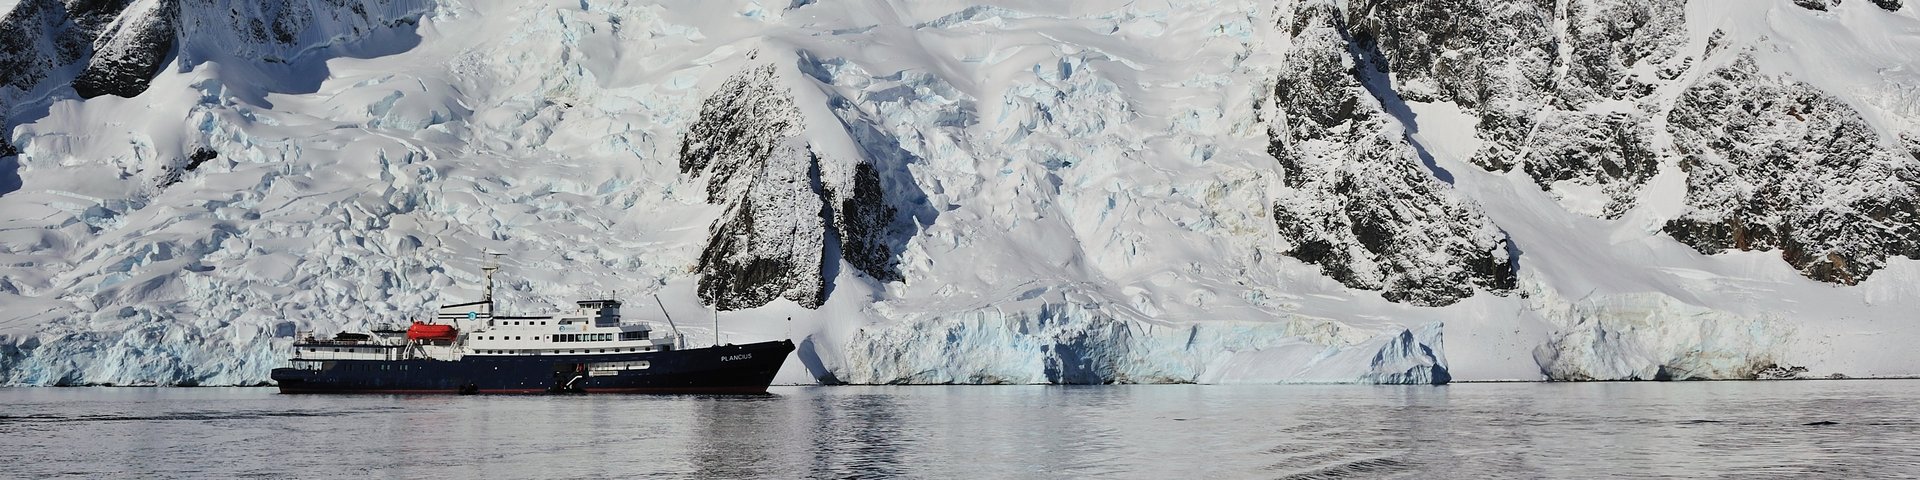 Die Plancius vor einer Bergkette in der Antarktis